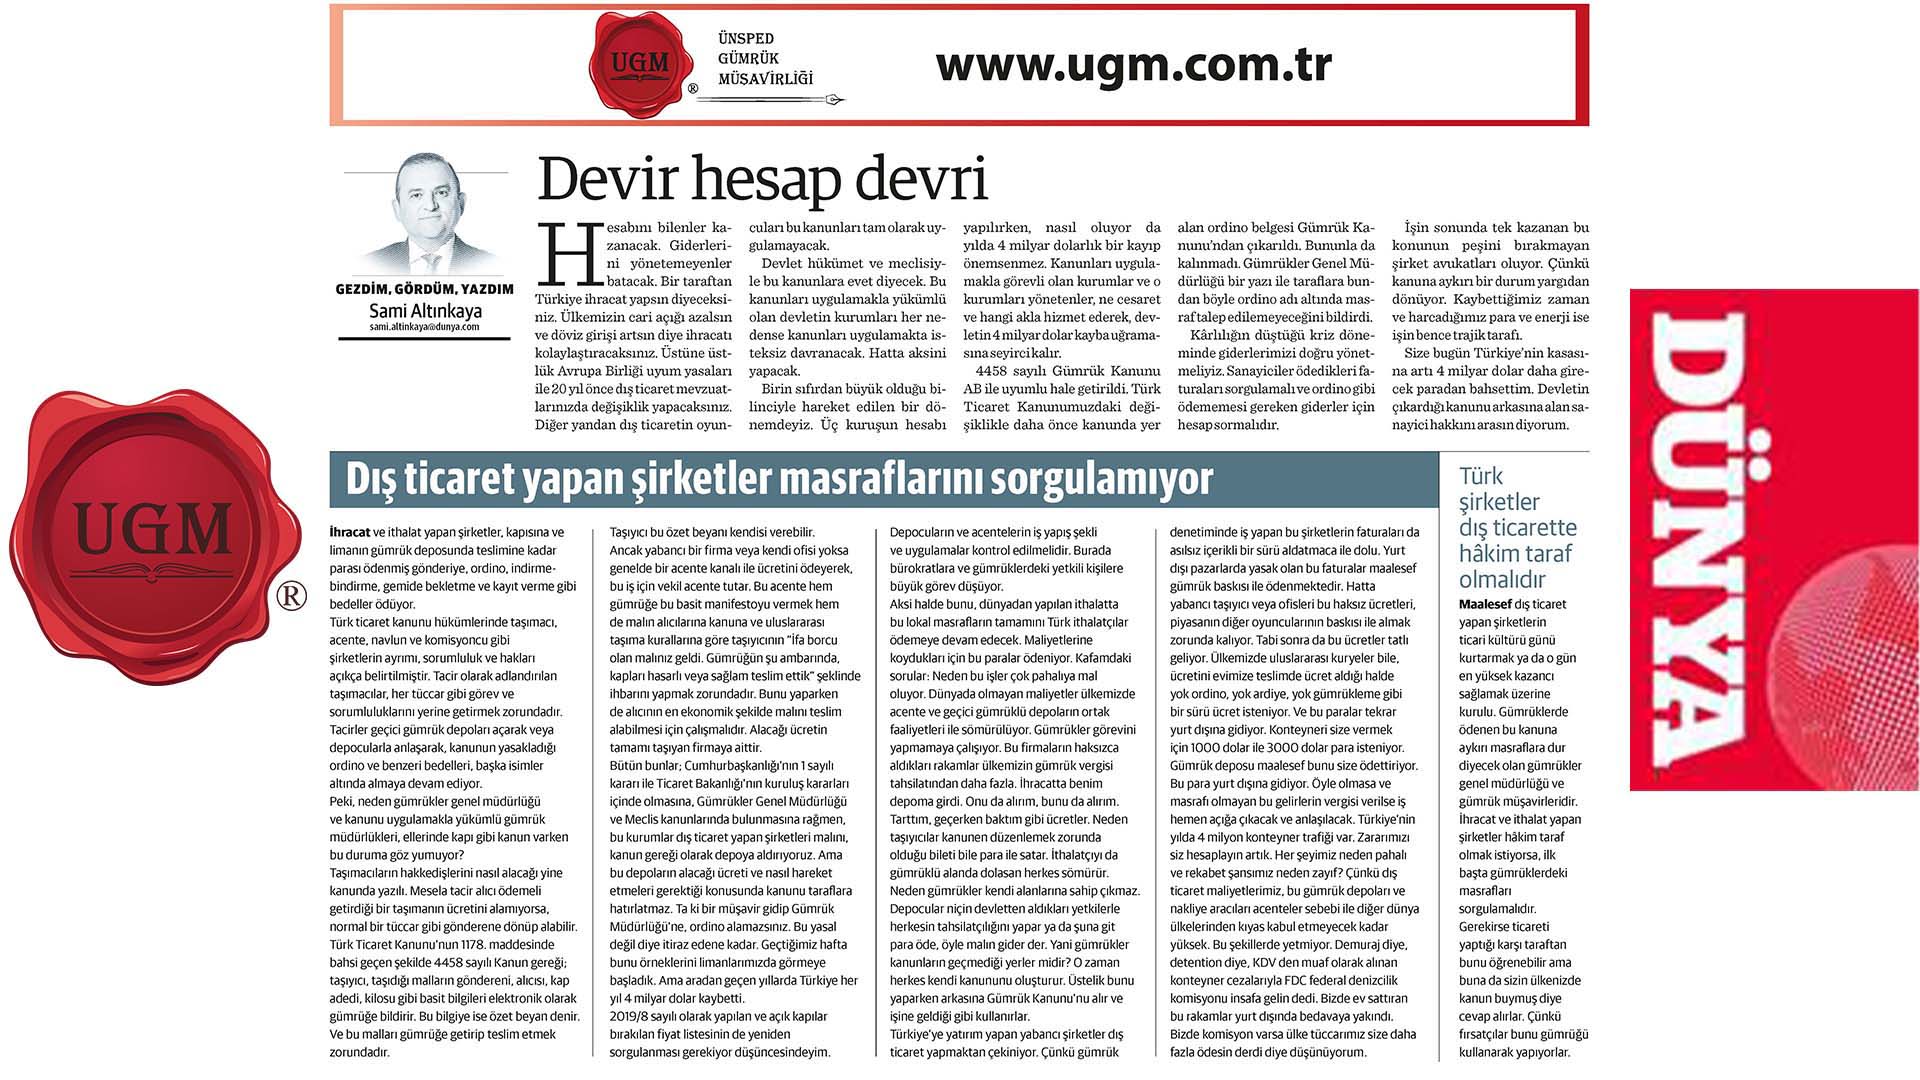 UGM Kurumsal İletişim Direktörümüz Sami Altınkaya'nın "Devir hesap devri" başlıklı yazısı, 11.05.2020 tarihinde Dünya Gazetesi'nde yayınlandı.